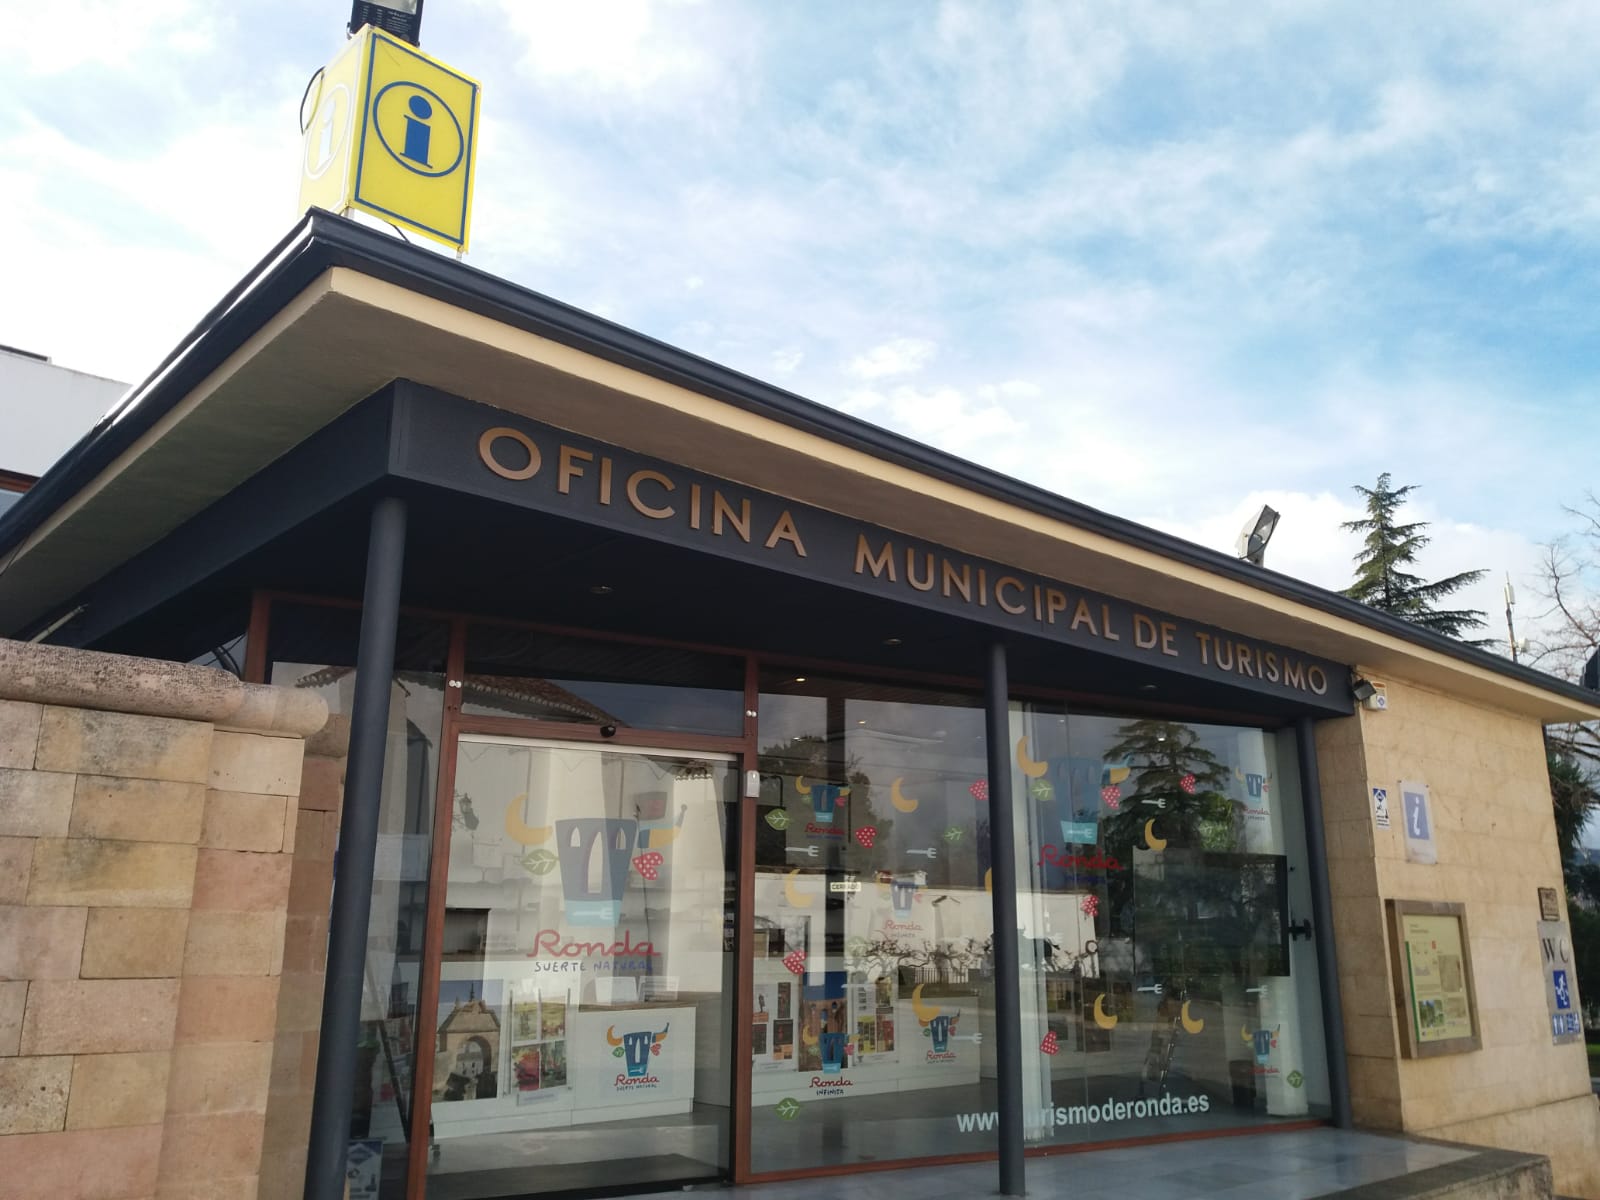 Ronda Tourist Office